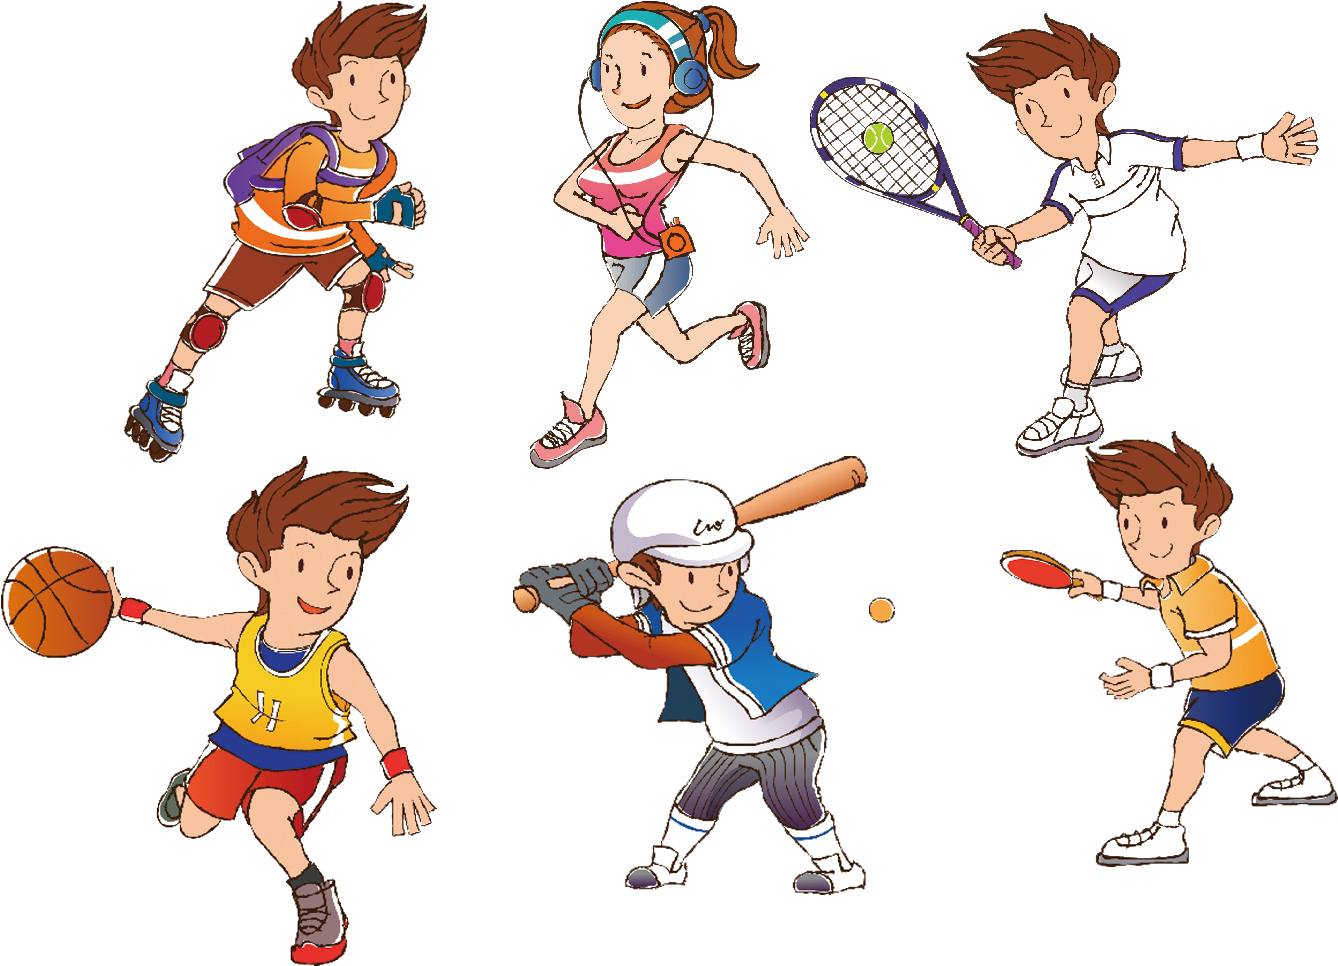 Kinds of competition. Спортивные рисунки. Летние спортивные игры для детей. Спорт картинки для детей. Изображения видов спорта для детей.